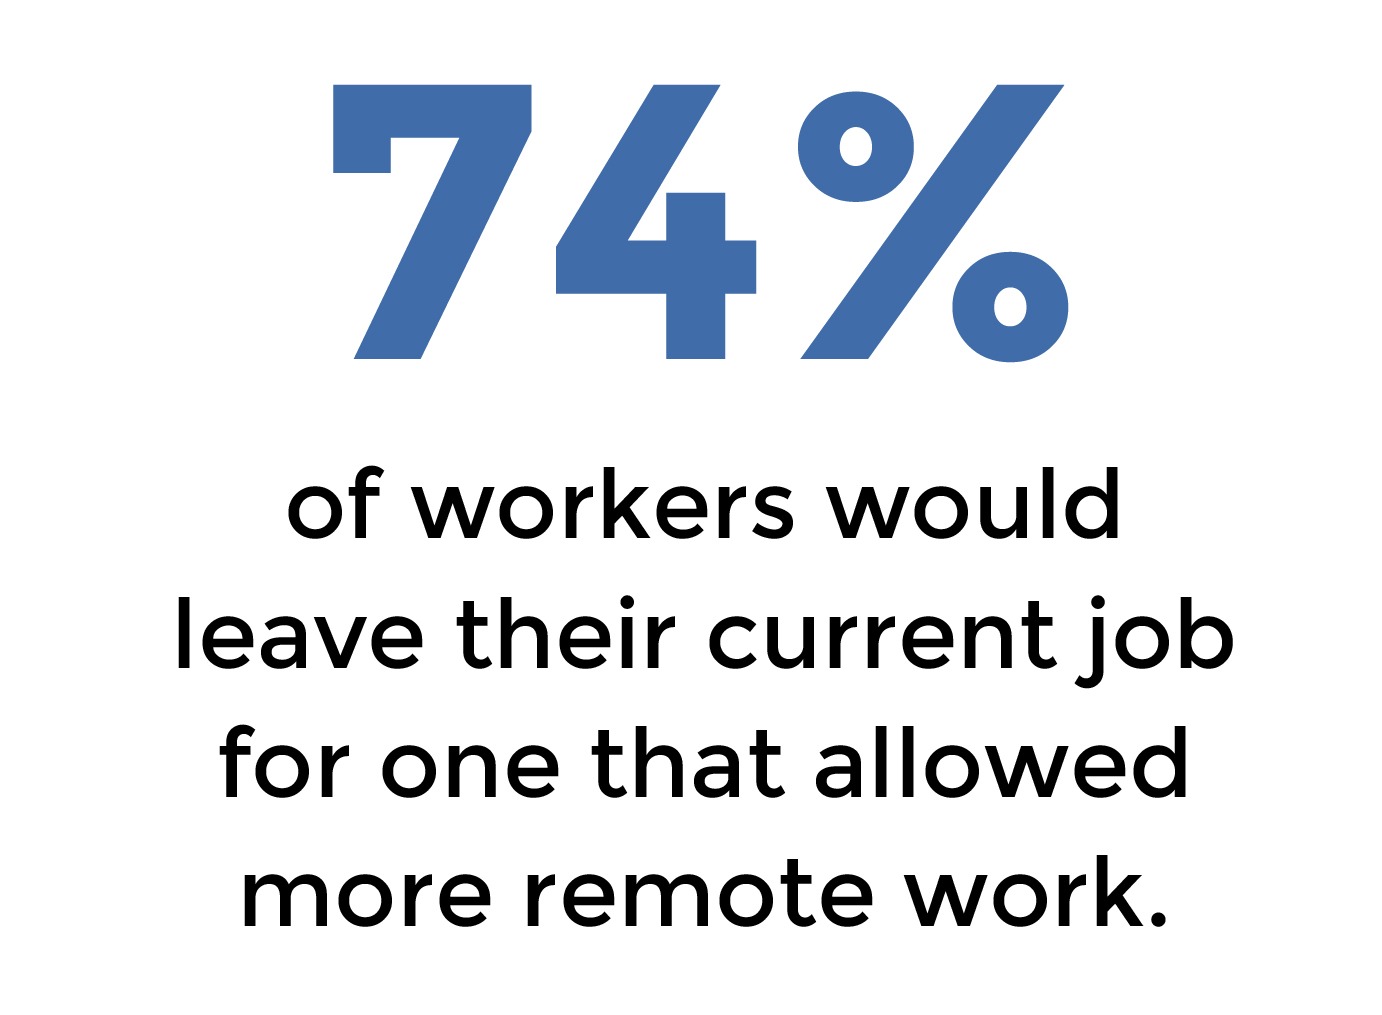 Remote work benefit